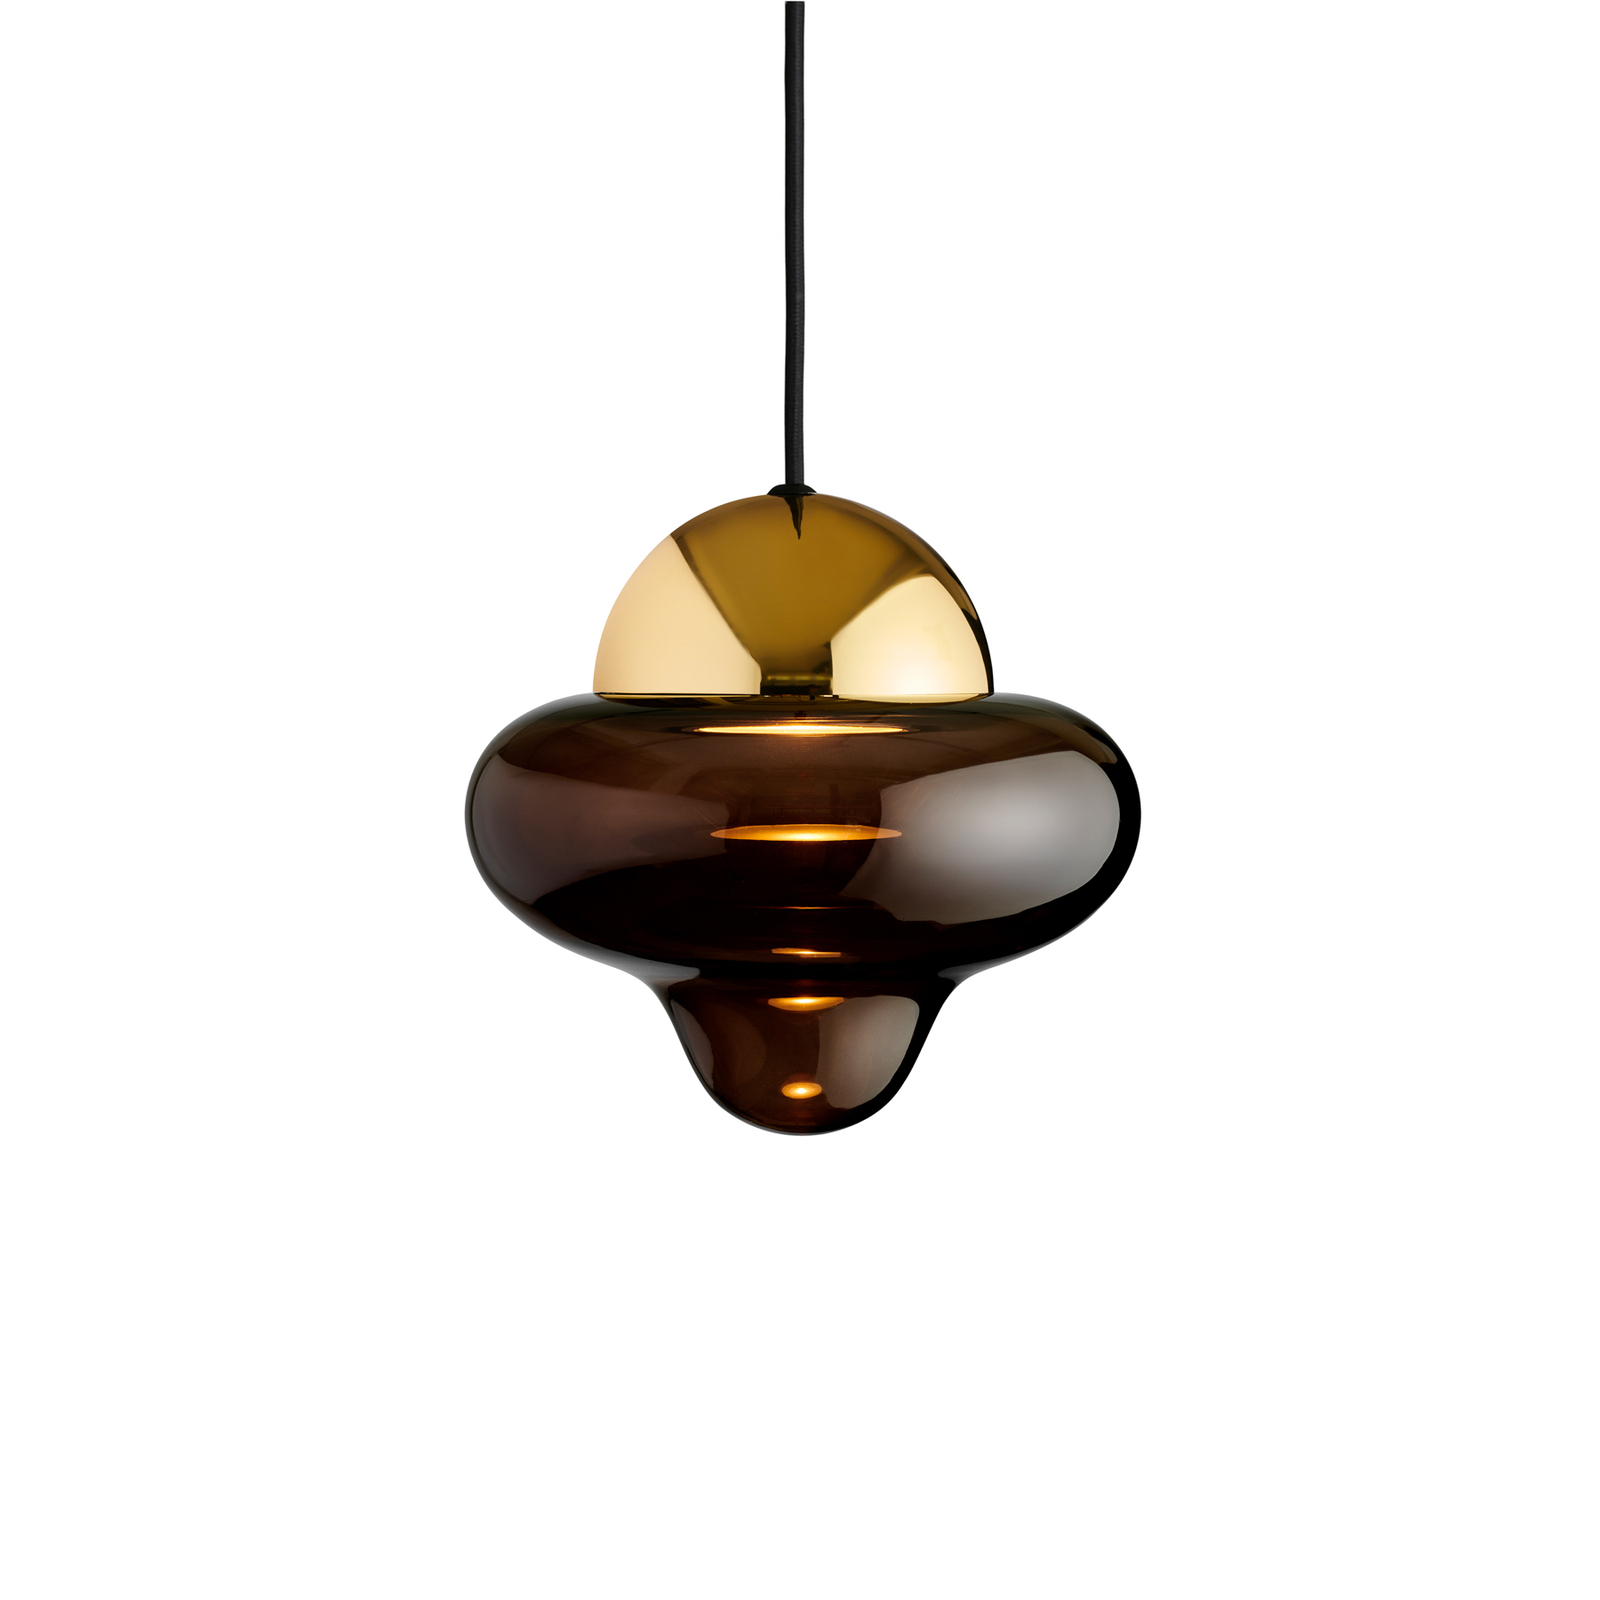 Nootachtige hanglamp, bruin/goudkleurig, Ø 18,5 cm, glas